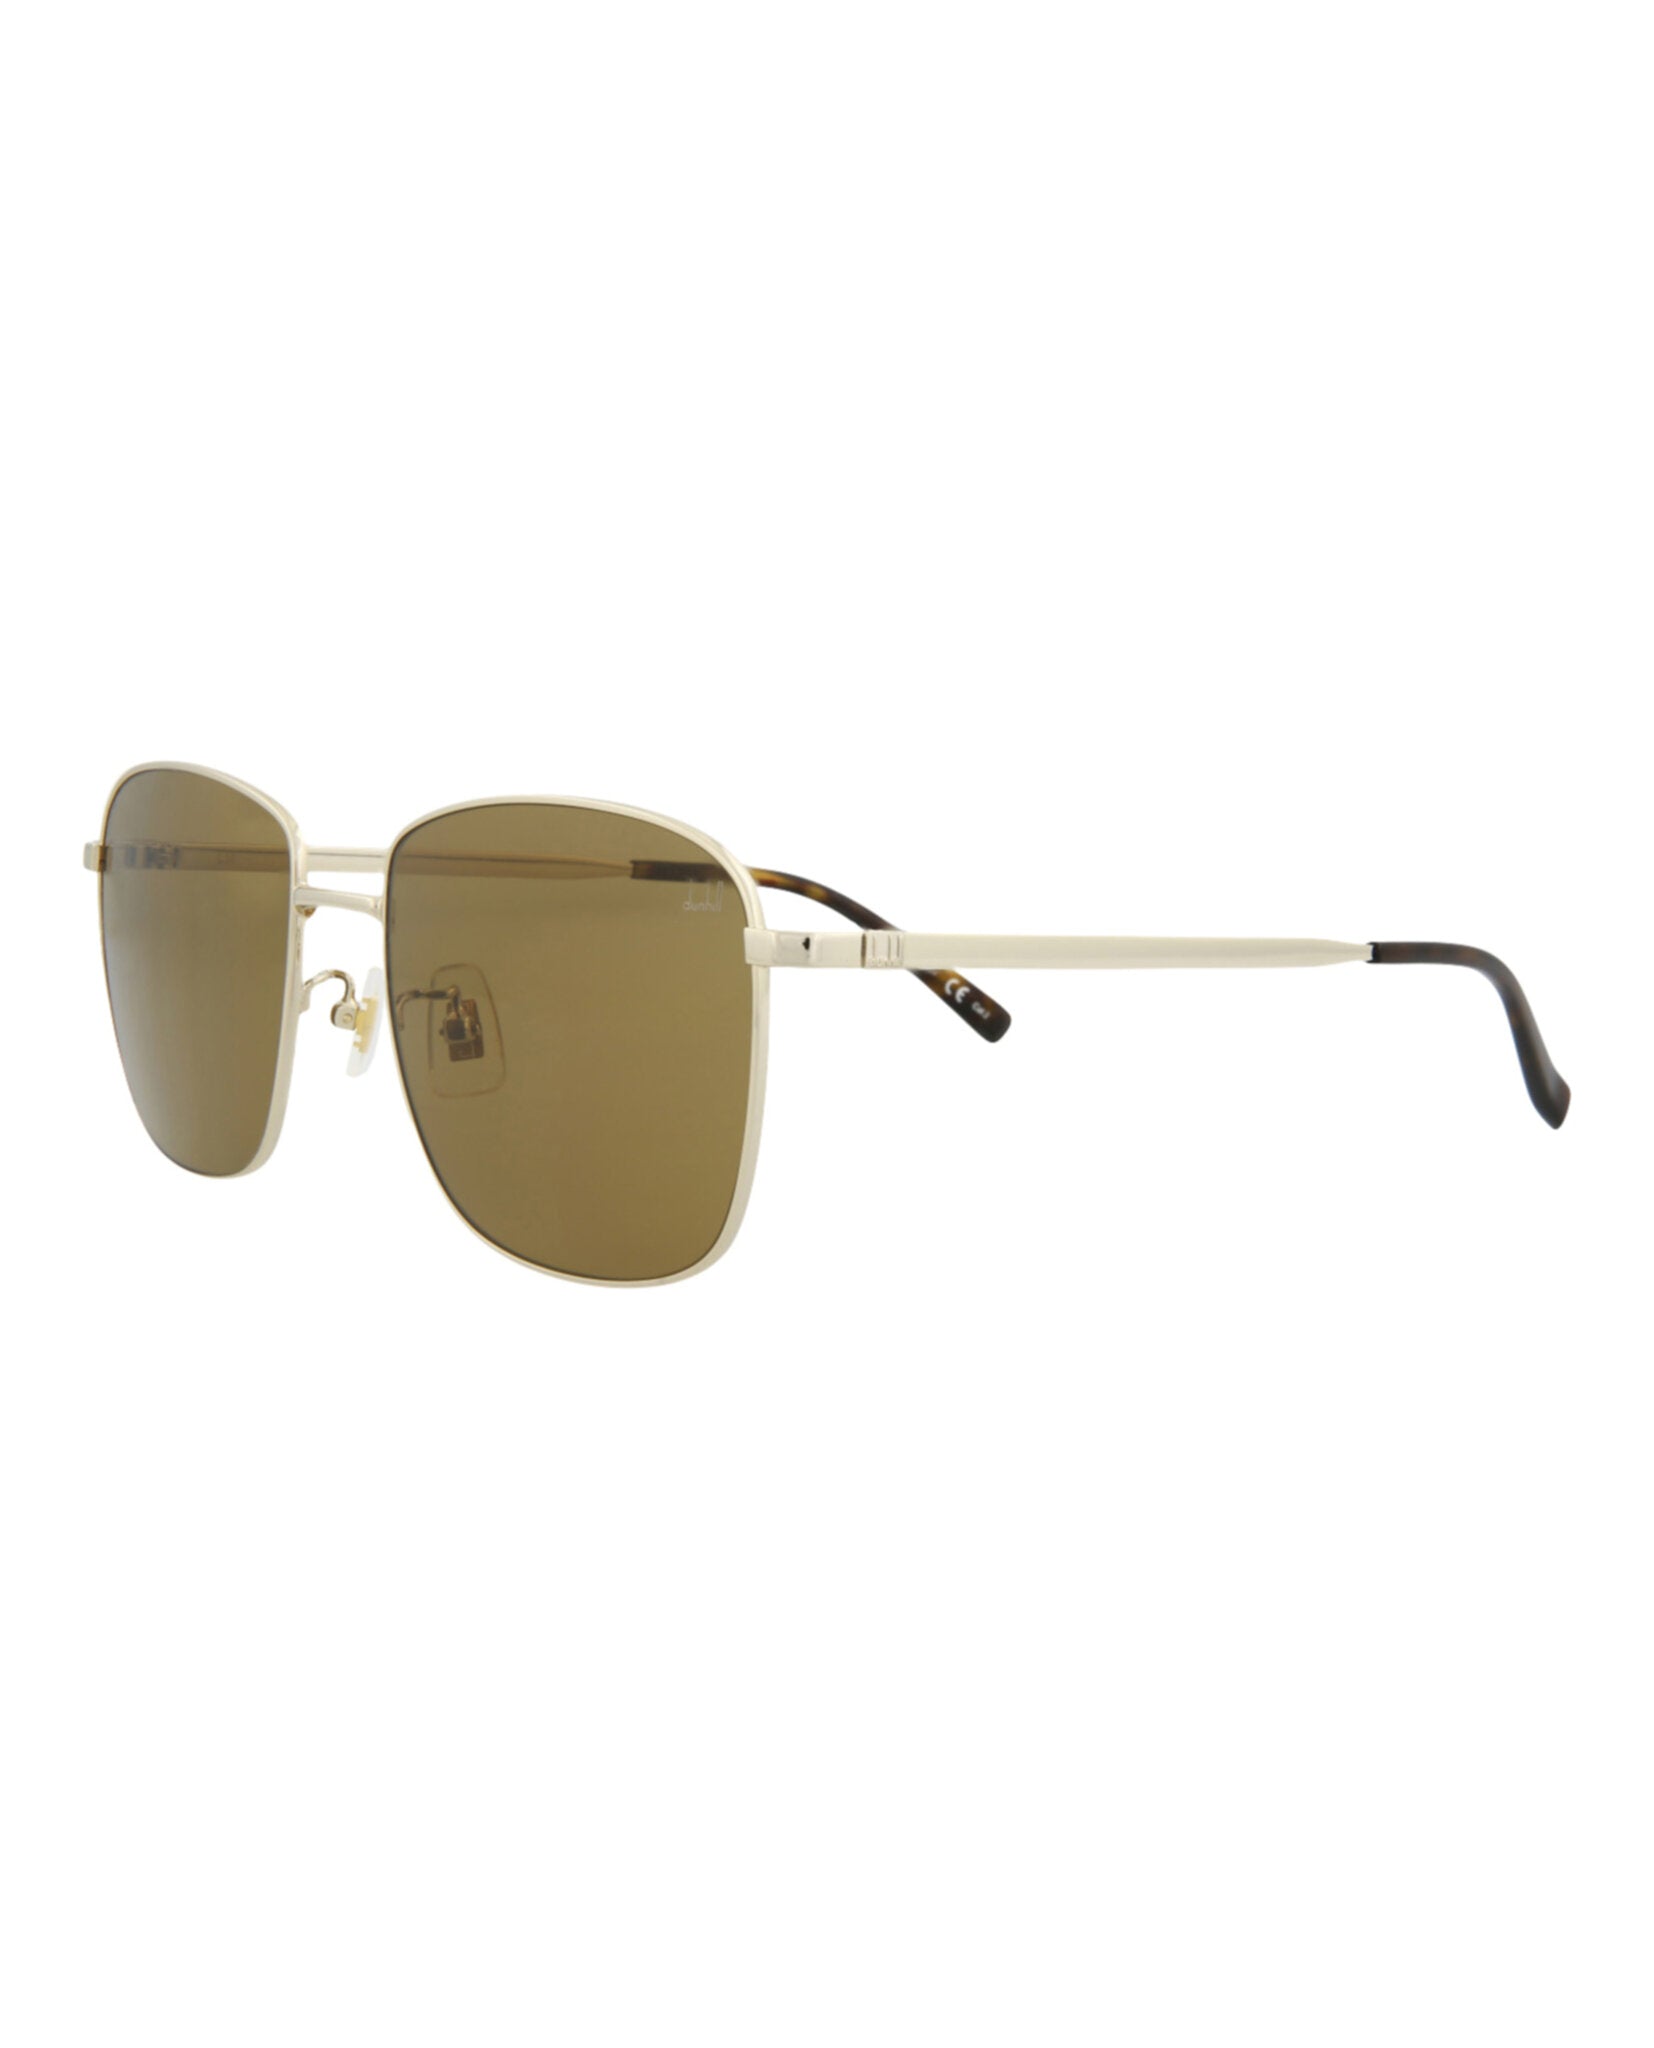 title:Dunhill Men's DU0011S-30009698003 Core Sunglasses;color:Gold Gold Brown